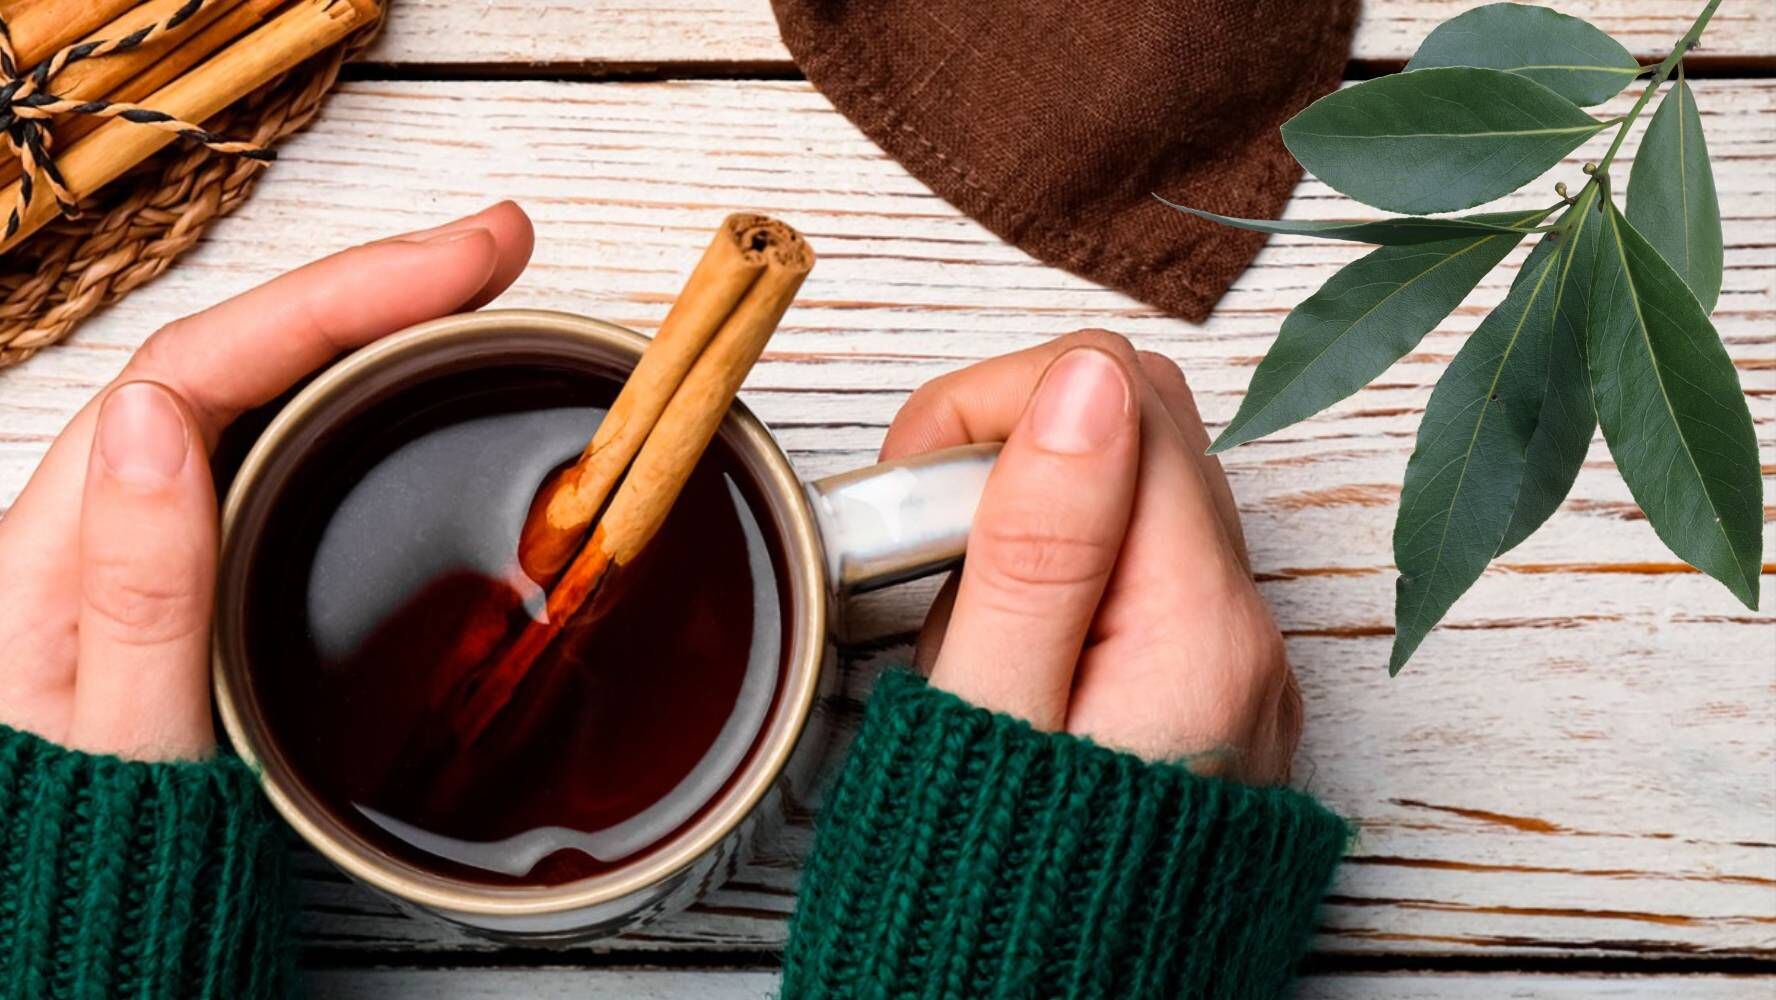 El té de canela y laurel es una combinación popular en remedios caseros para aliviar dolores estomacales. (Foto: Especial / El Financiero).